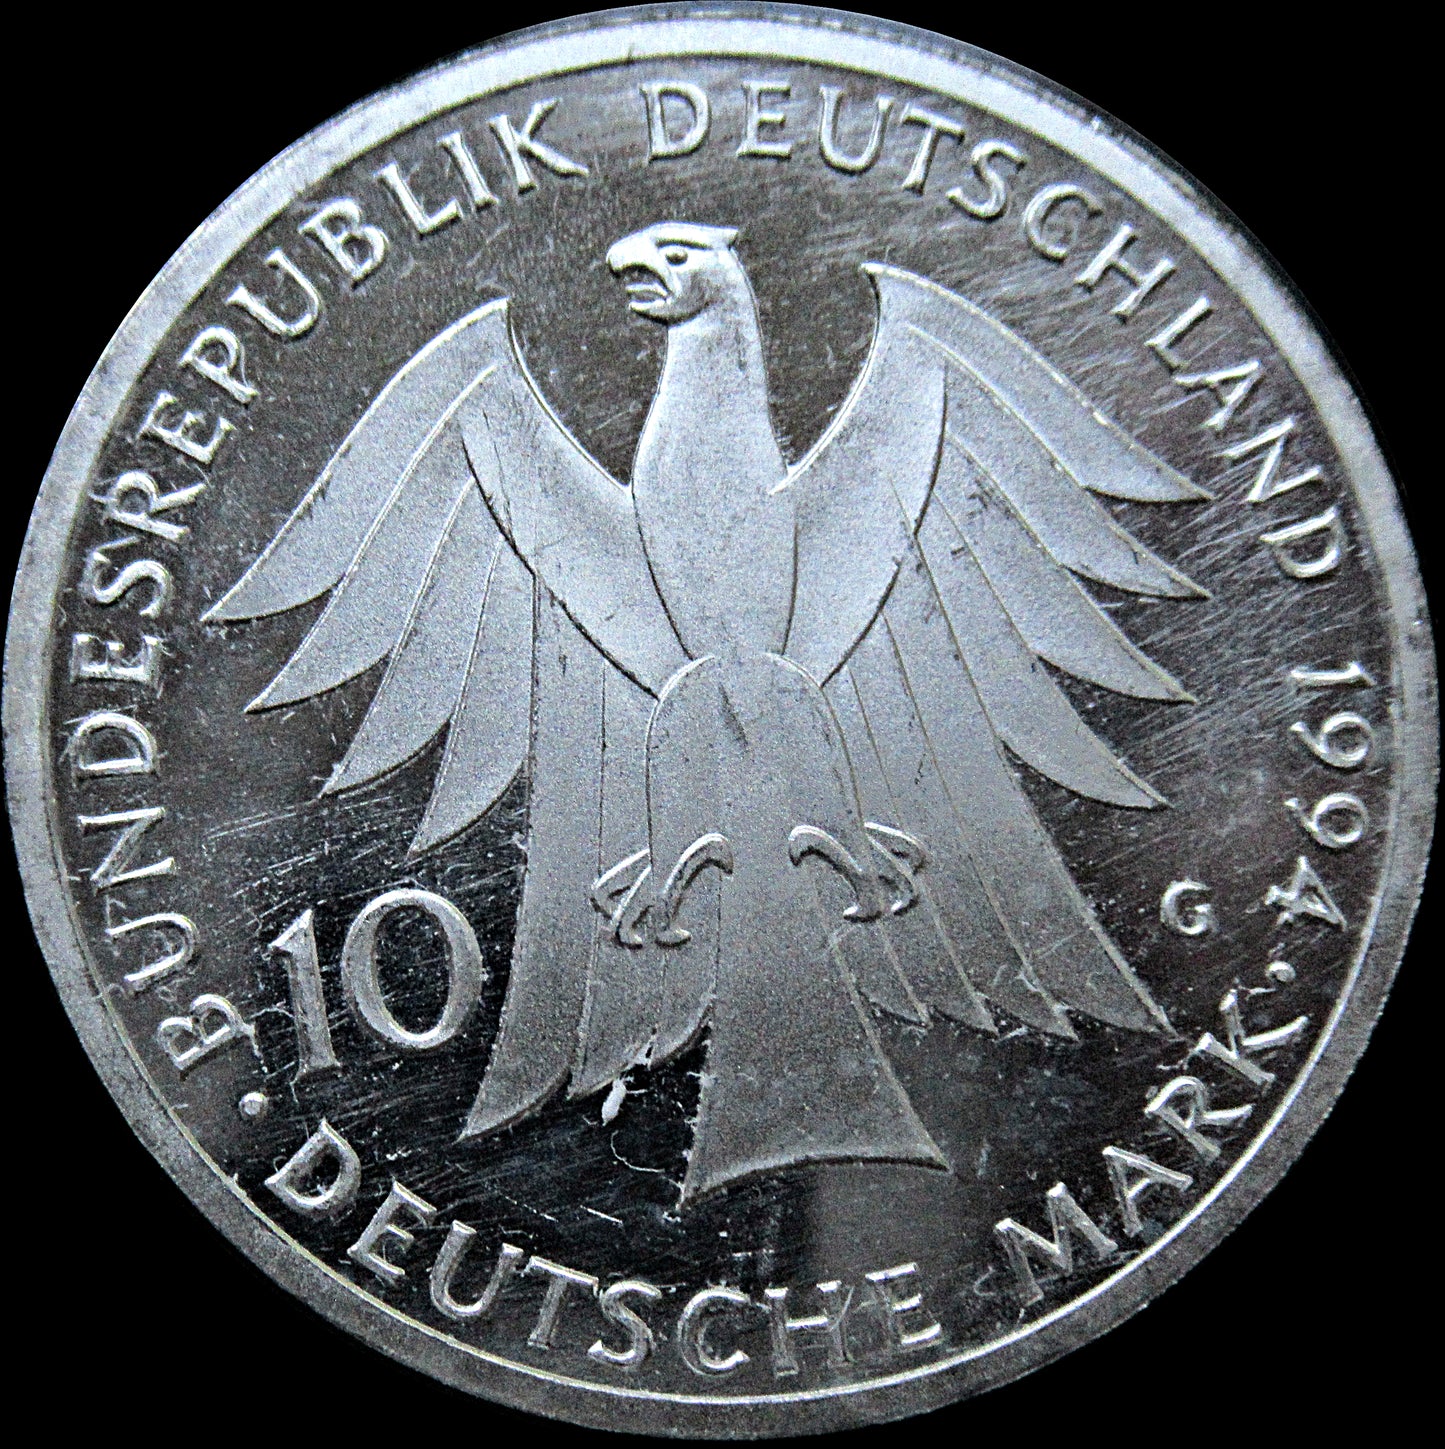 JOHANN GOTTFRIED HERDER, series 10 DM silver coin, 1994